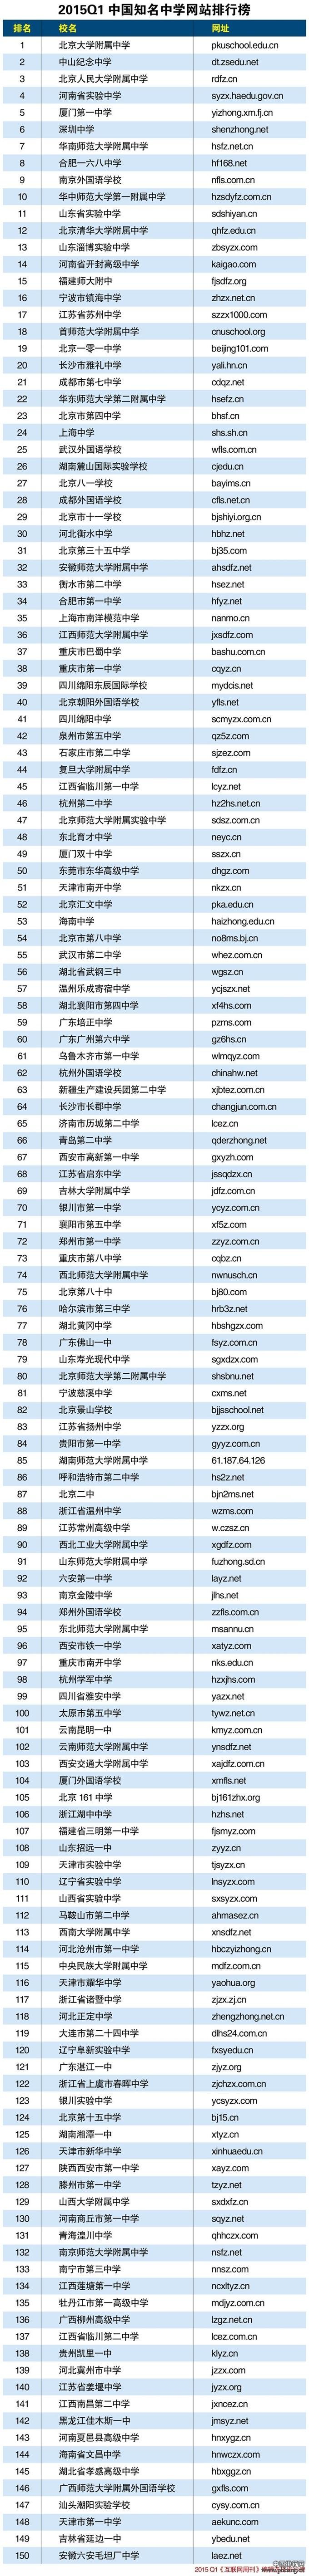 2015年一季度中国知名中学网站排行榜TOP150